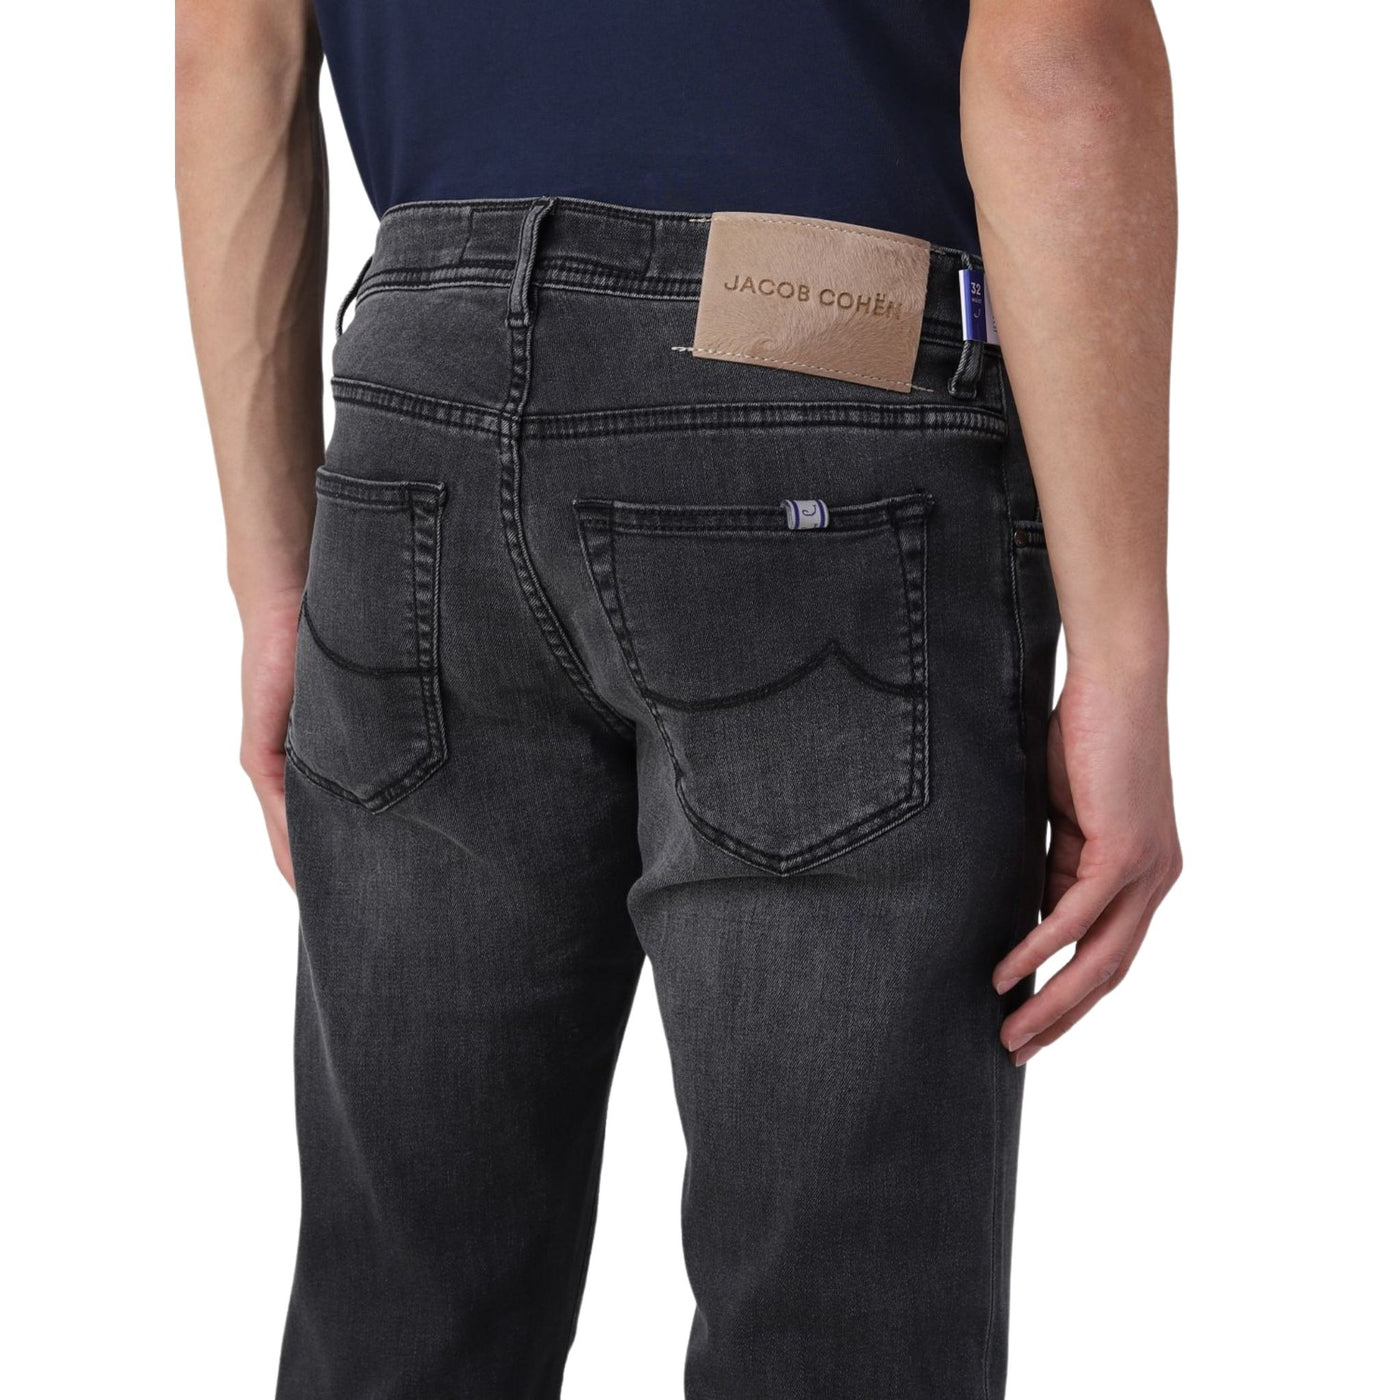 Jeans da uomo grigio firmato Jacob Cohen su modello dettaglio retro